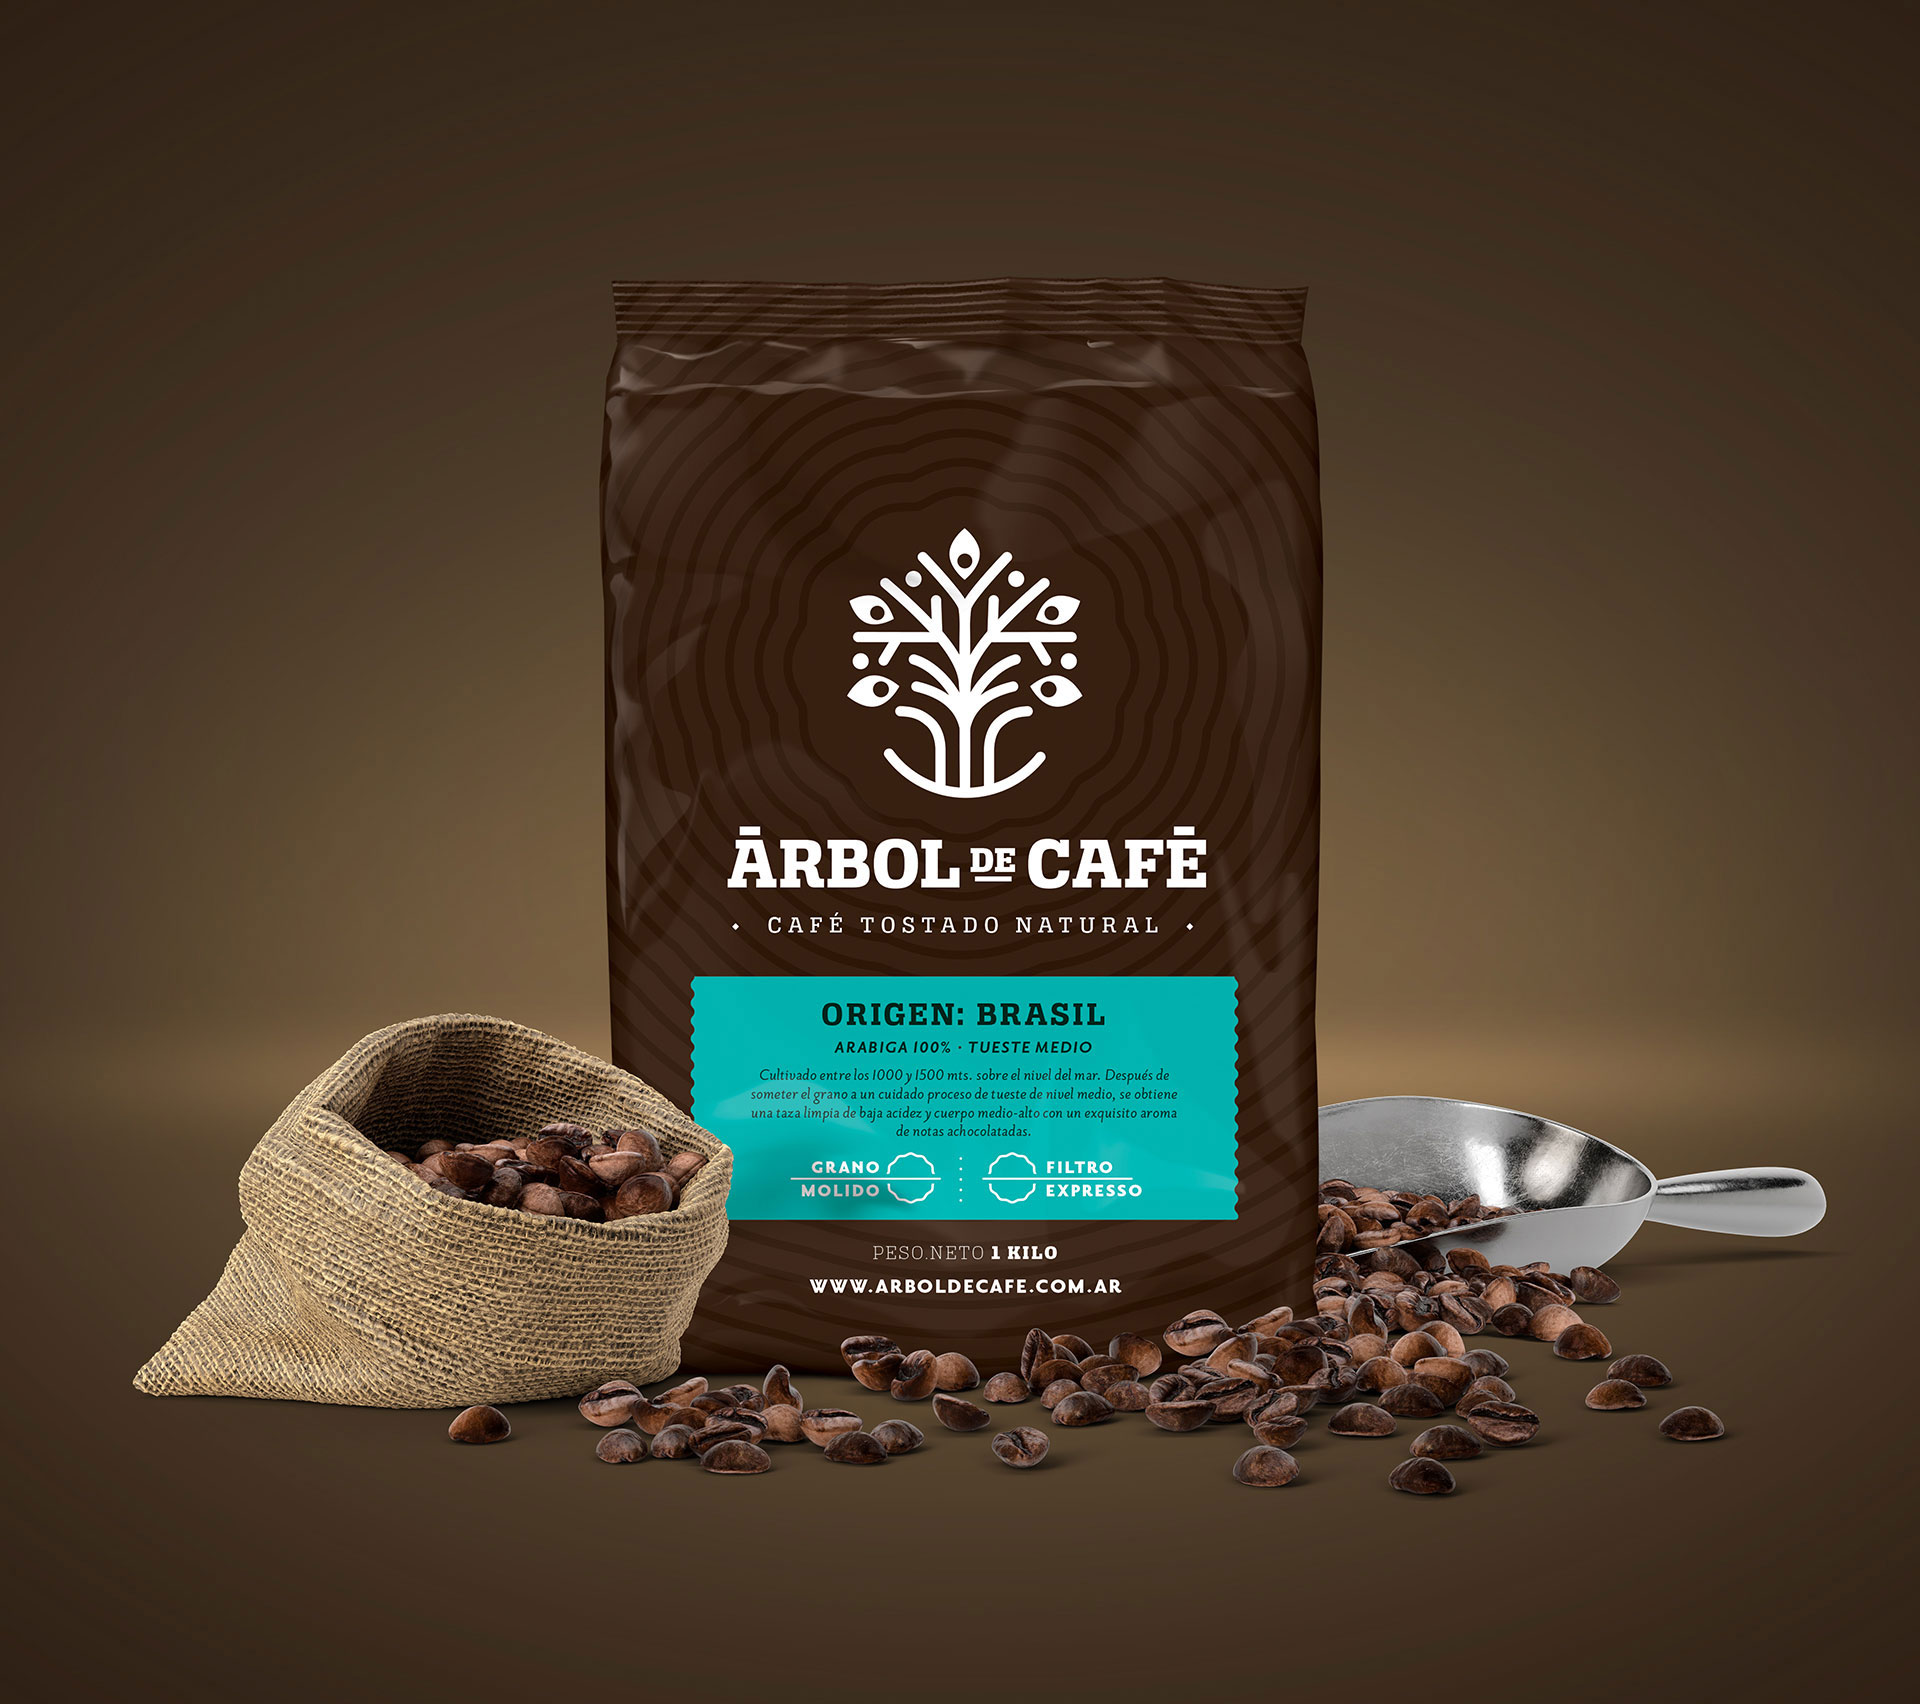 The Barista’s Coffee ‘Arbol de Cafe’ Brand Design